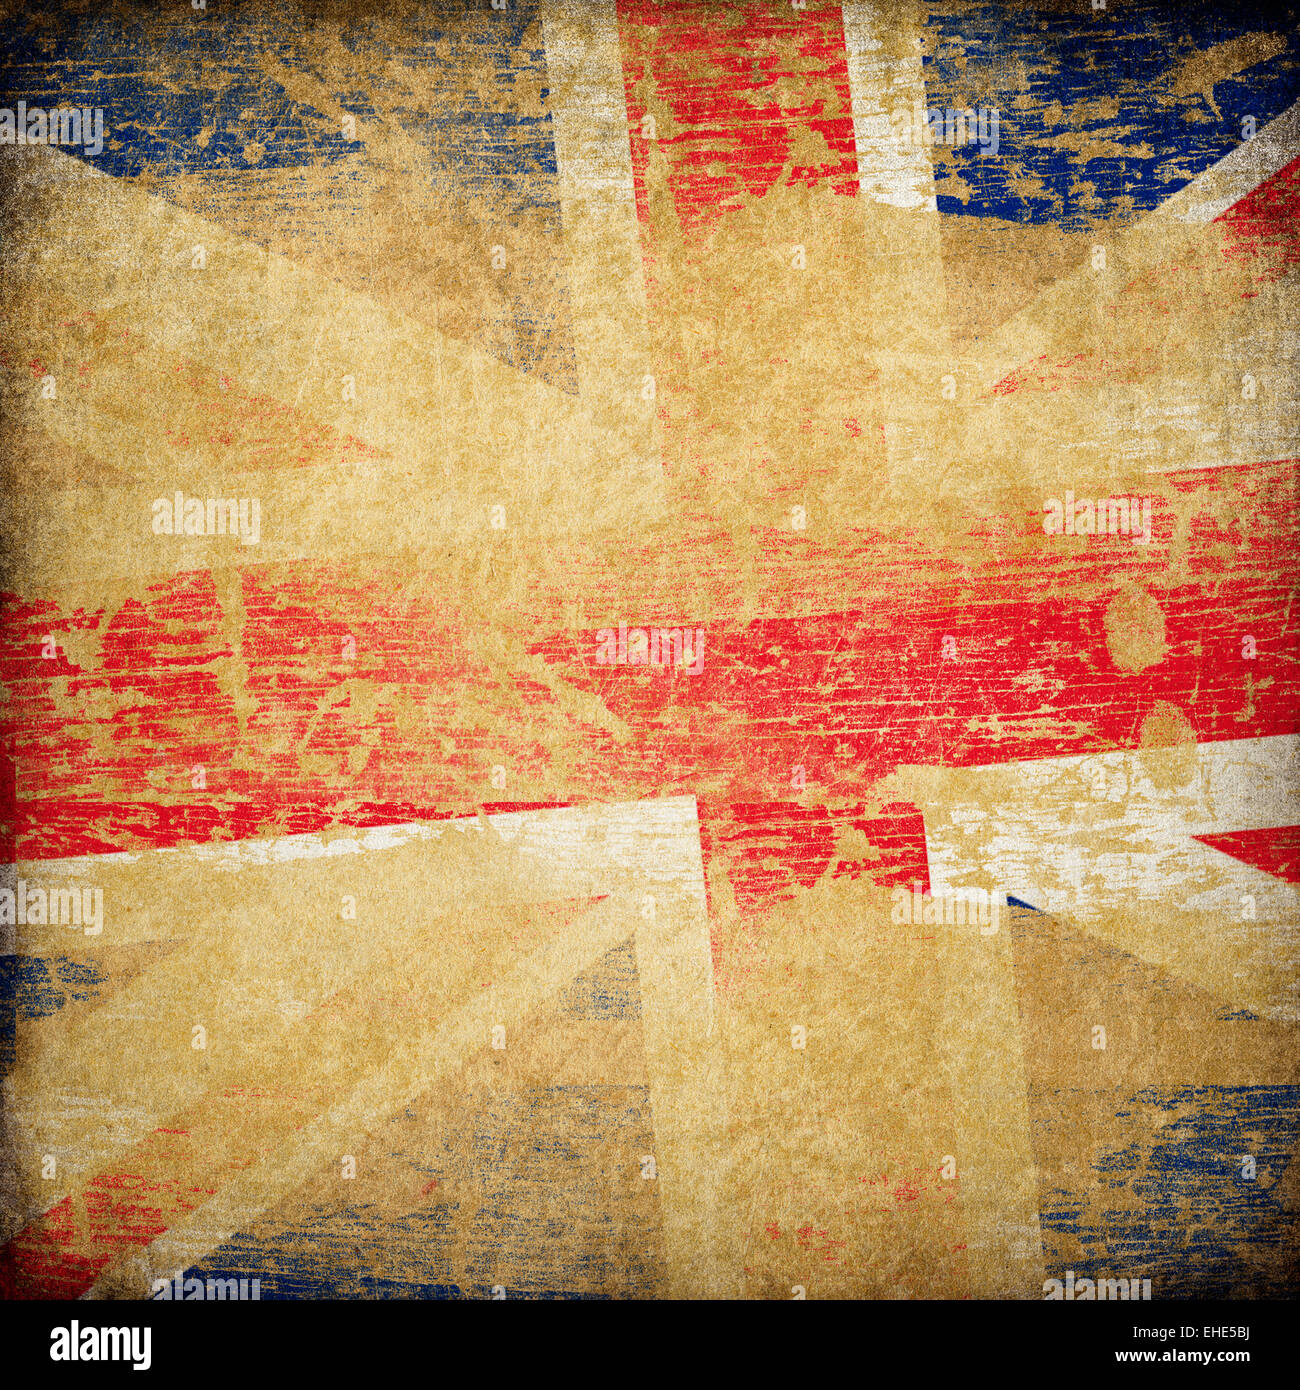 England grunge flag background. Stock Photo